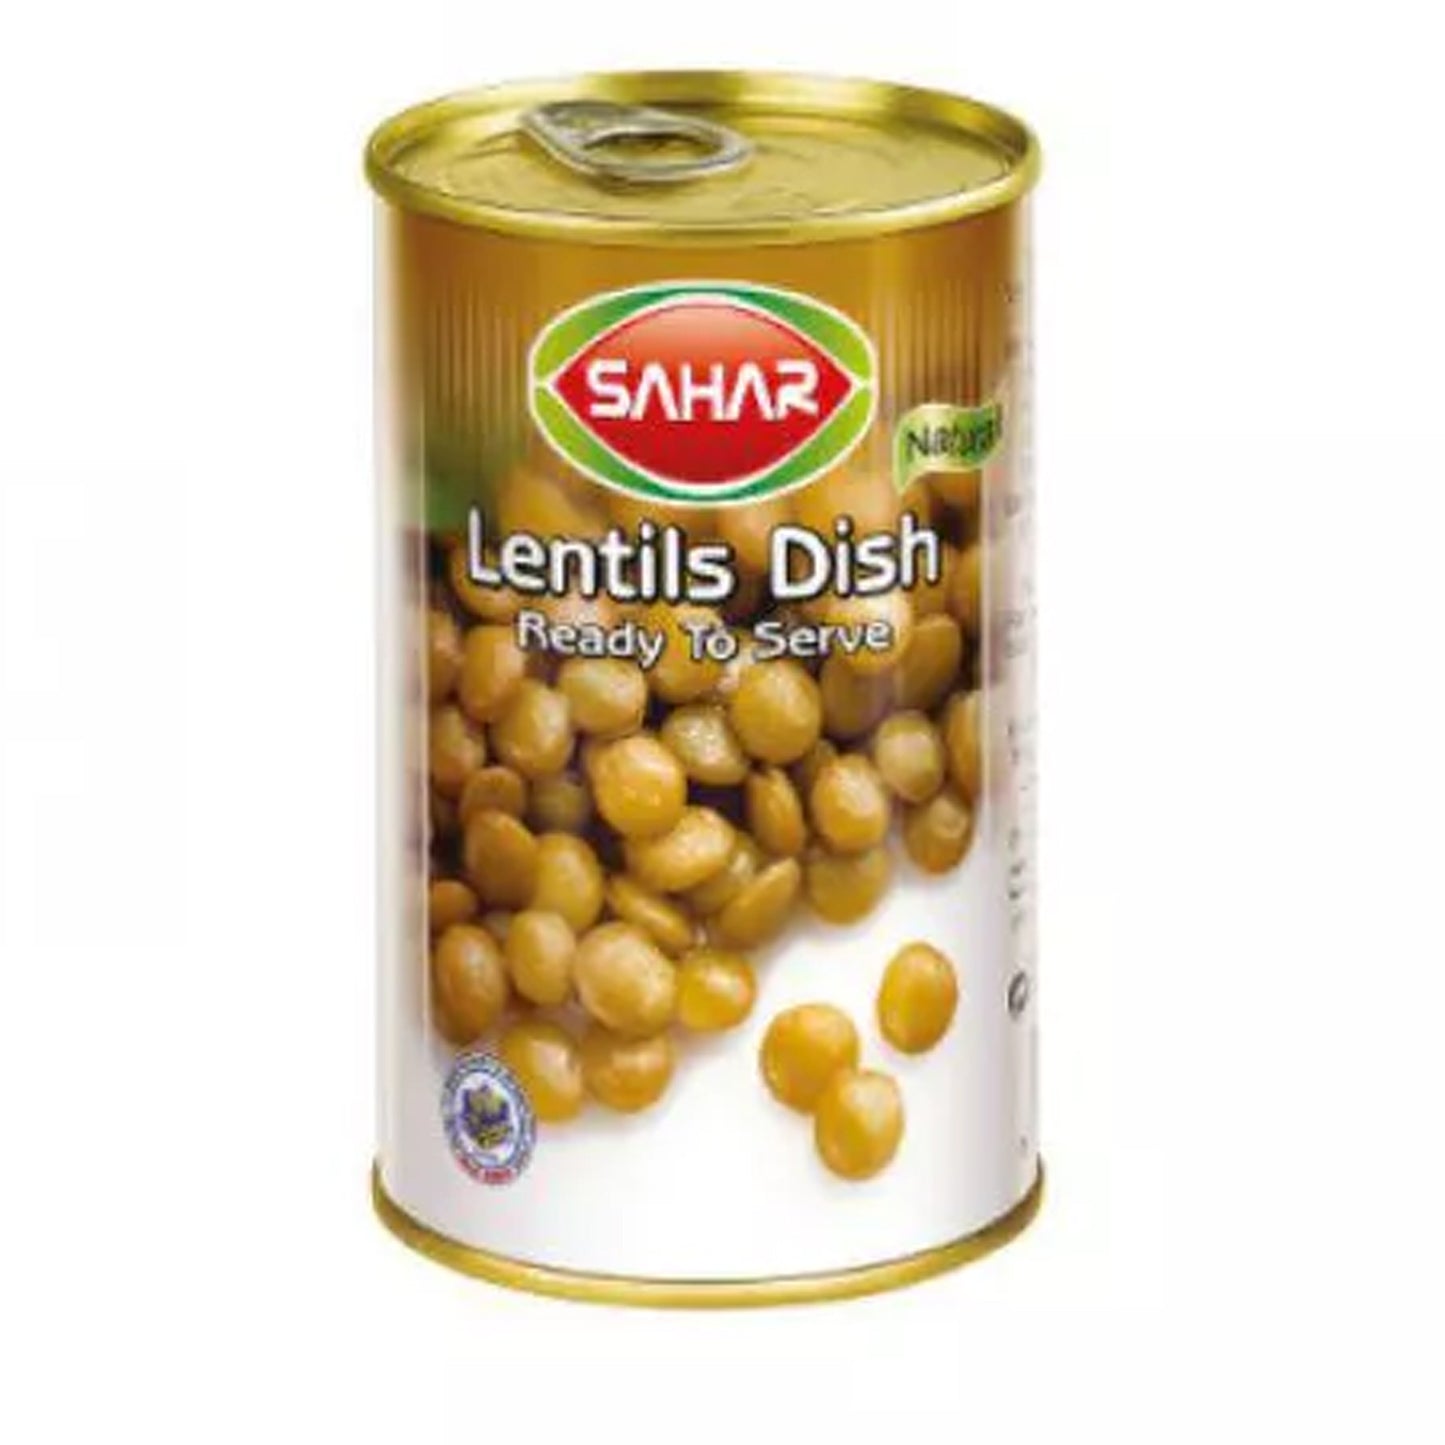 Sahar Lentils Dish